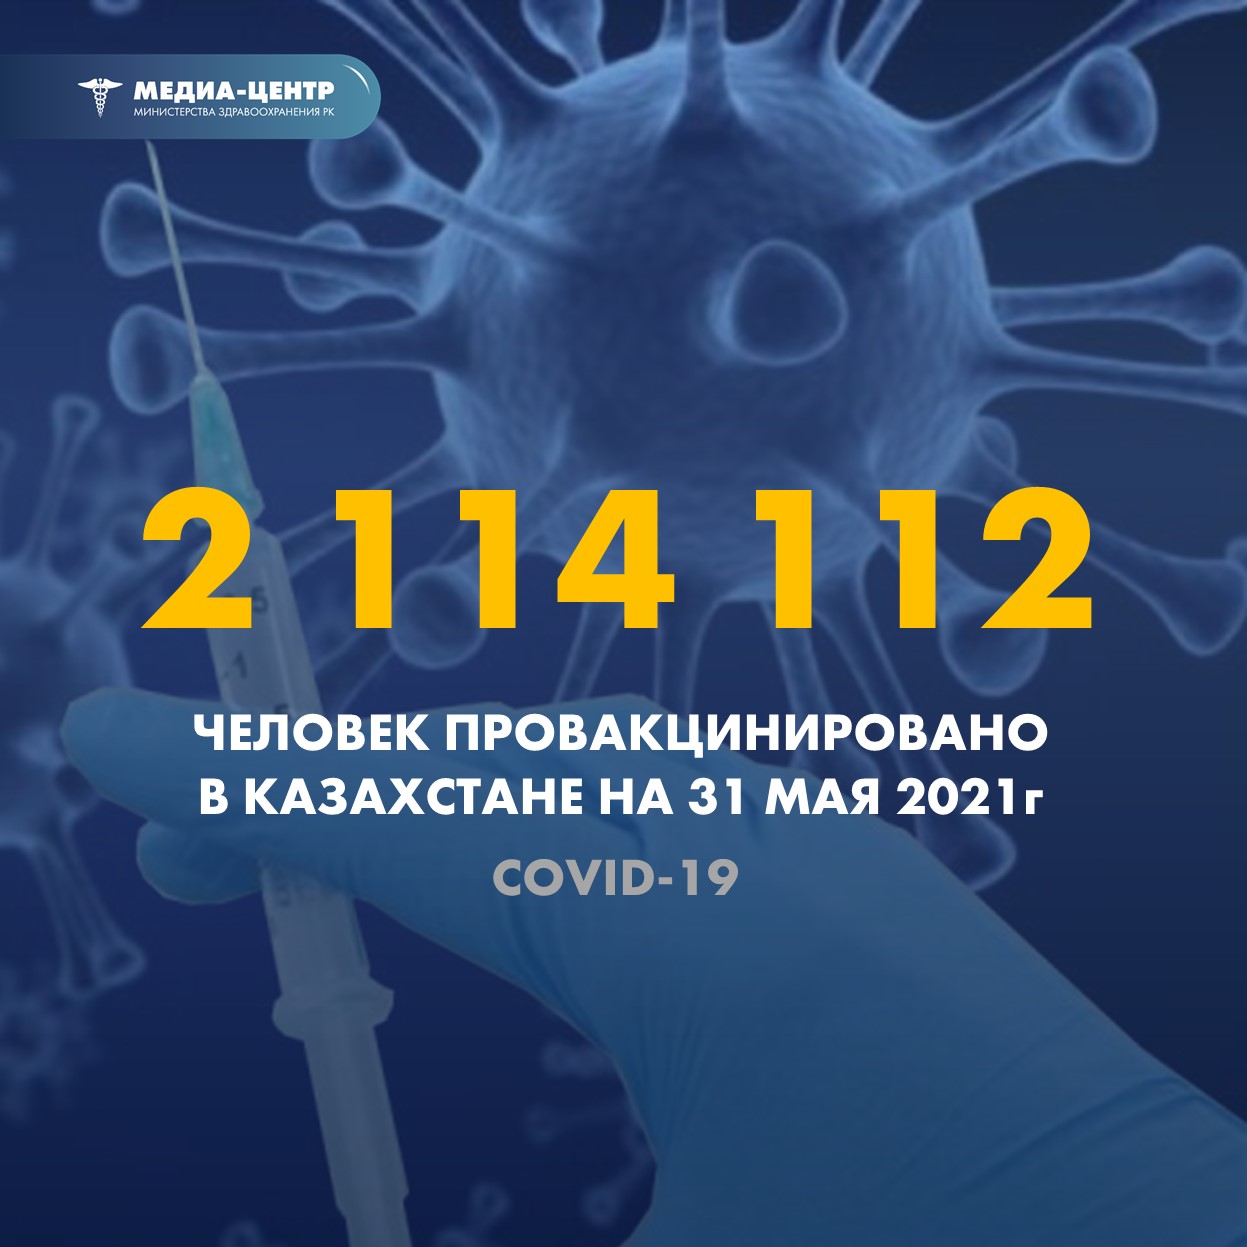 Информация о заболеваемости коронавирусной инфекцией в РК на 31.05.2021г.